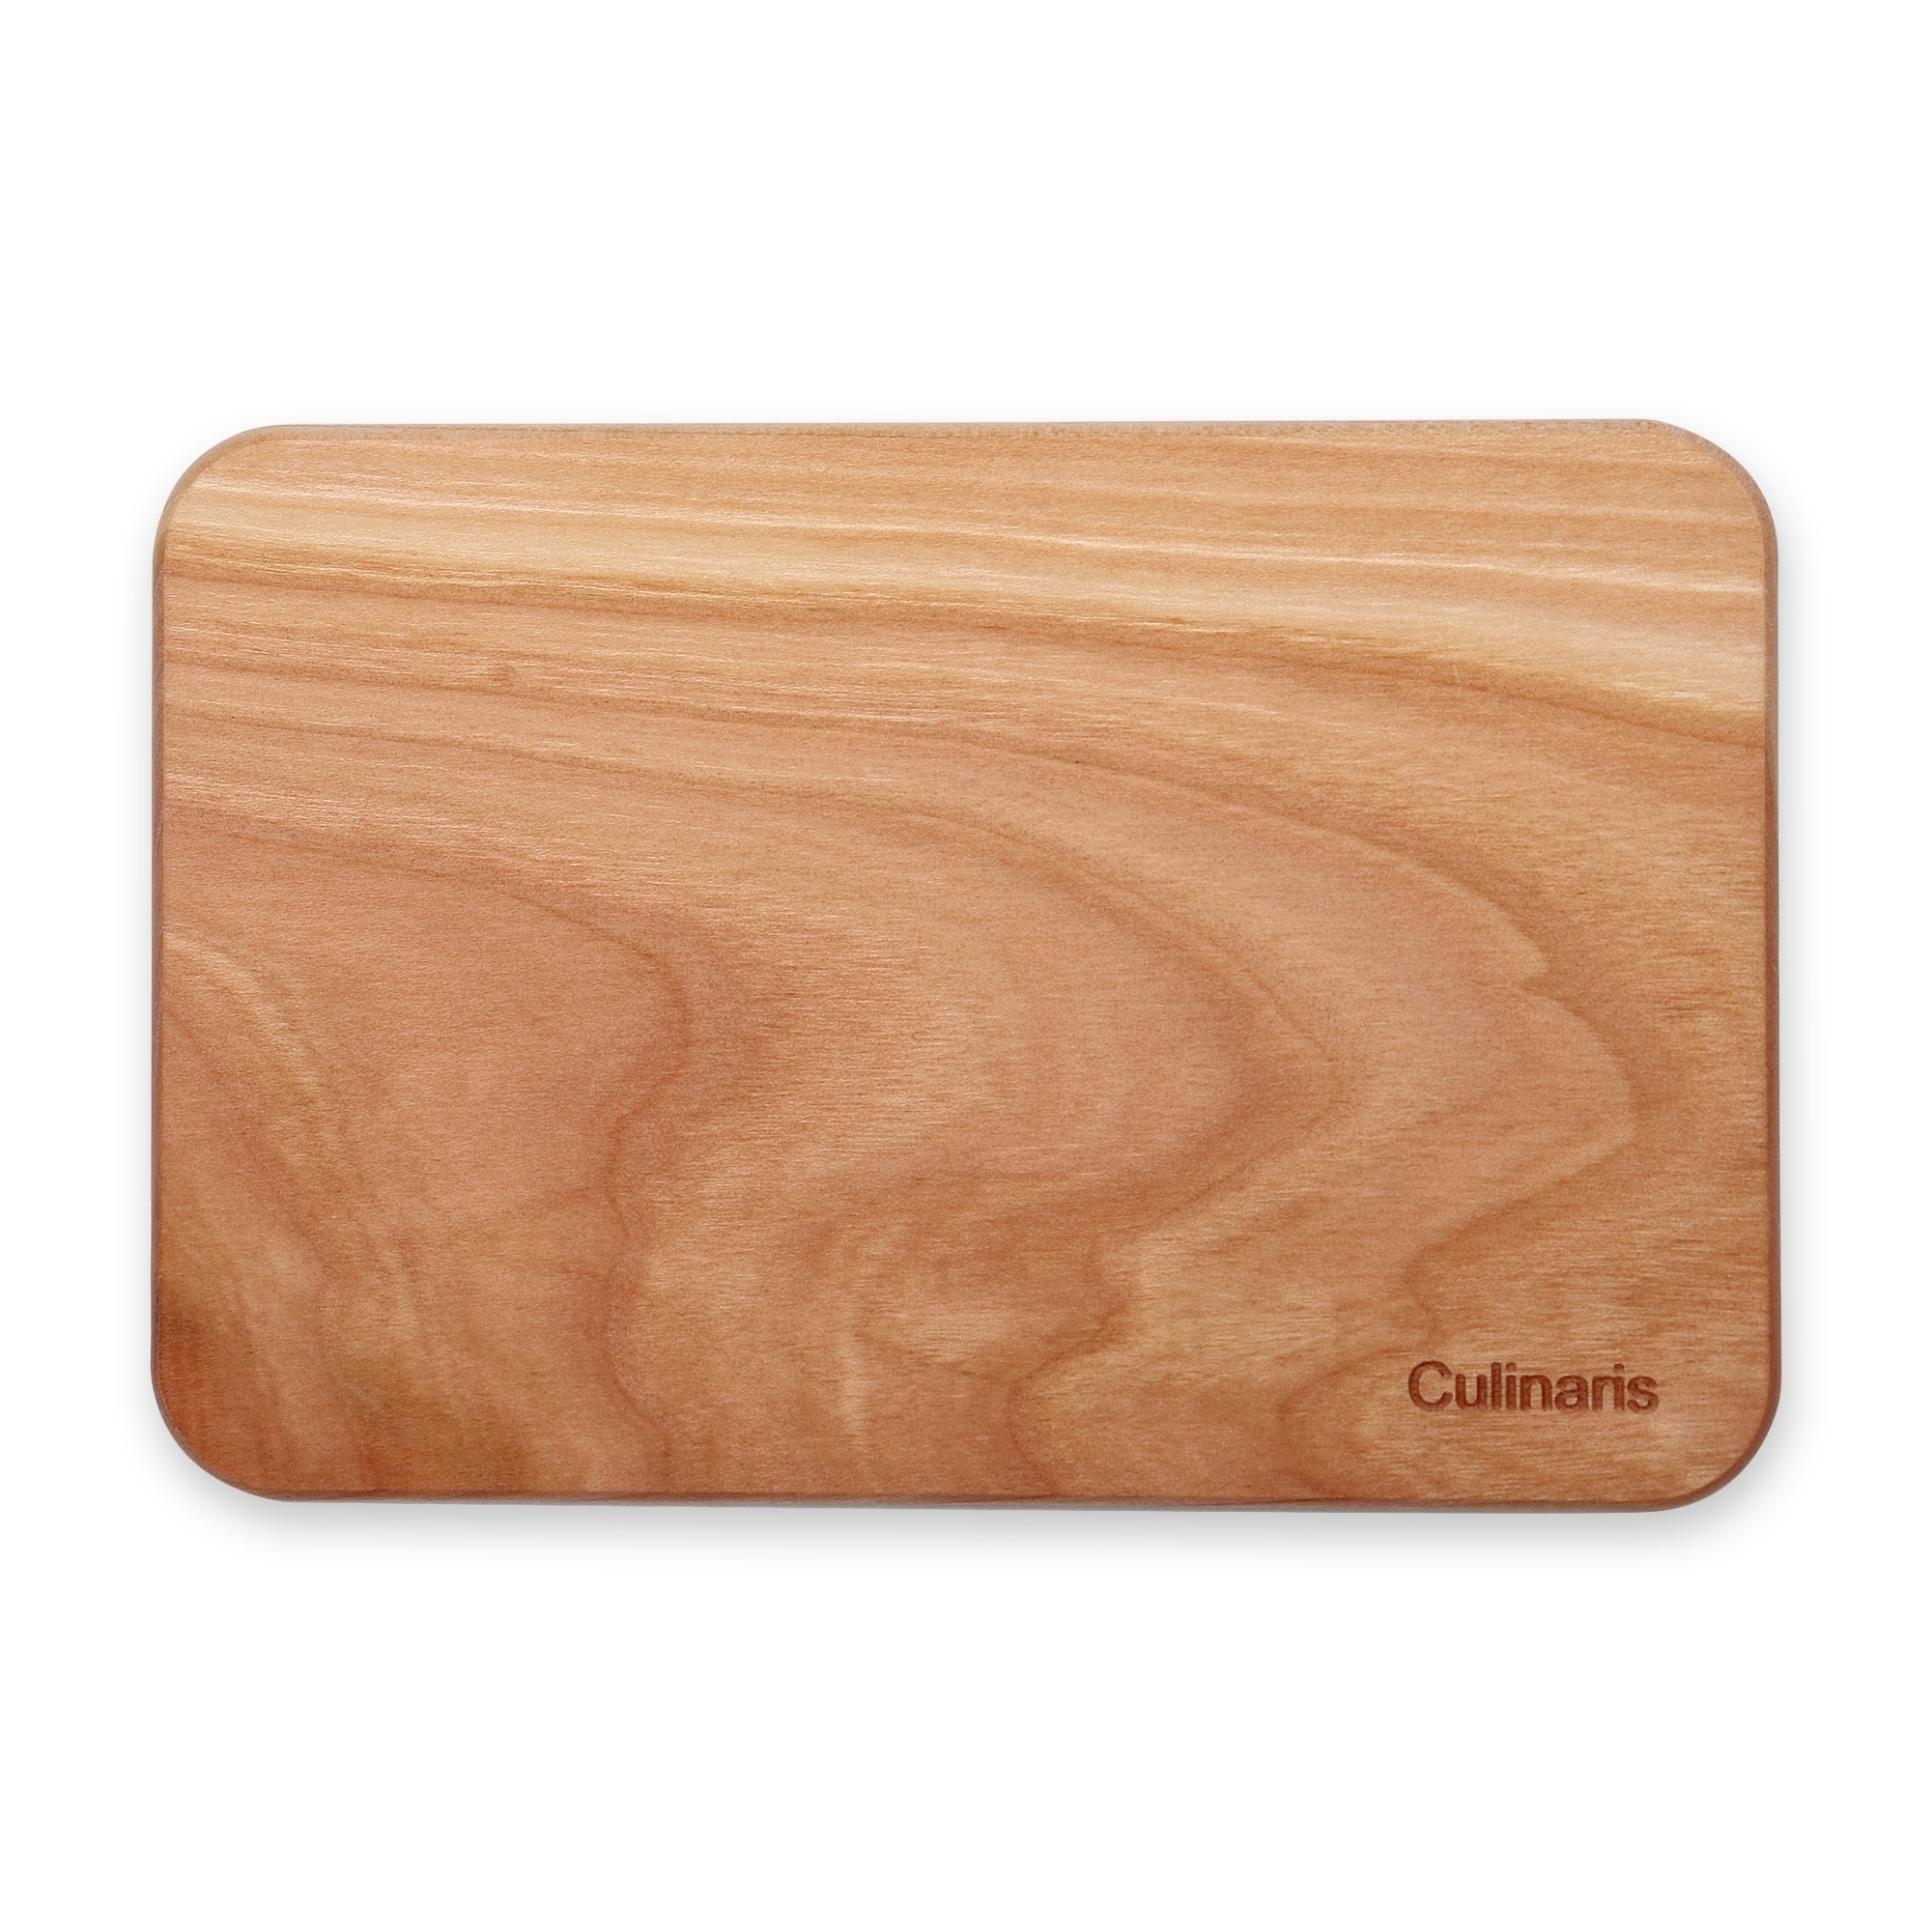 Culinaris - cutting board - cherry wood set of 6 - 18 x 12 cm